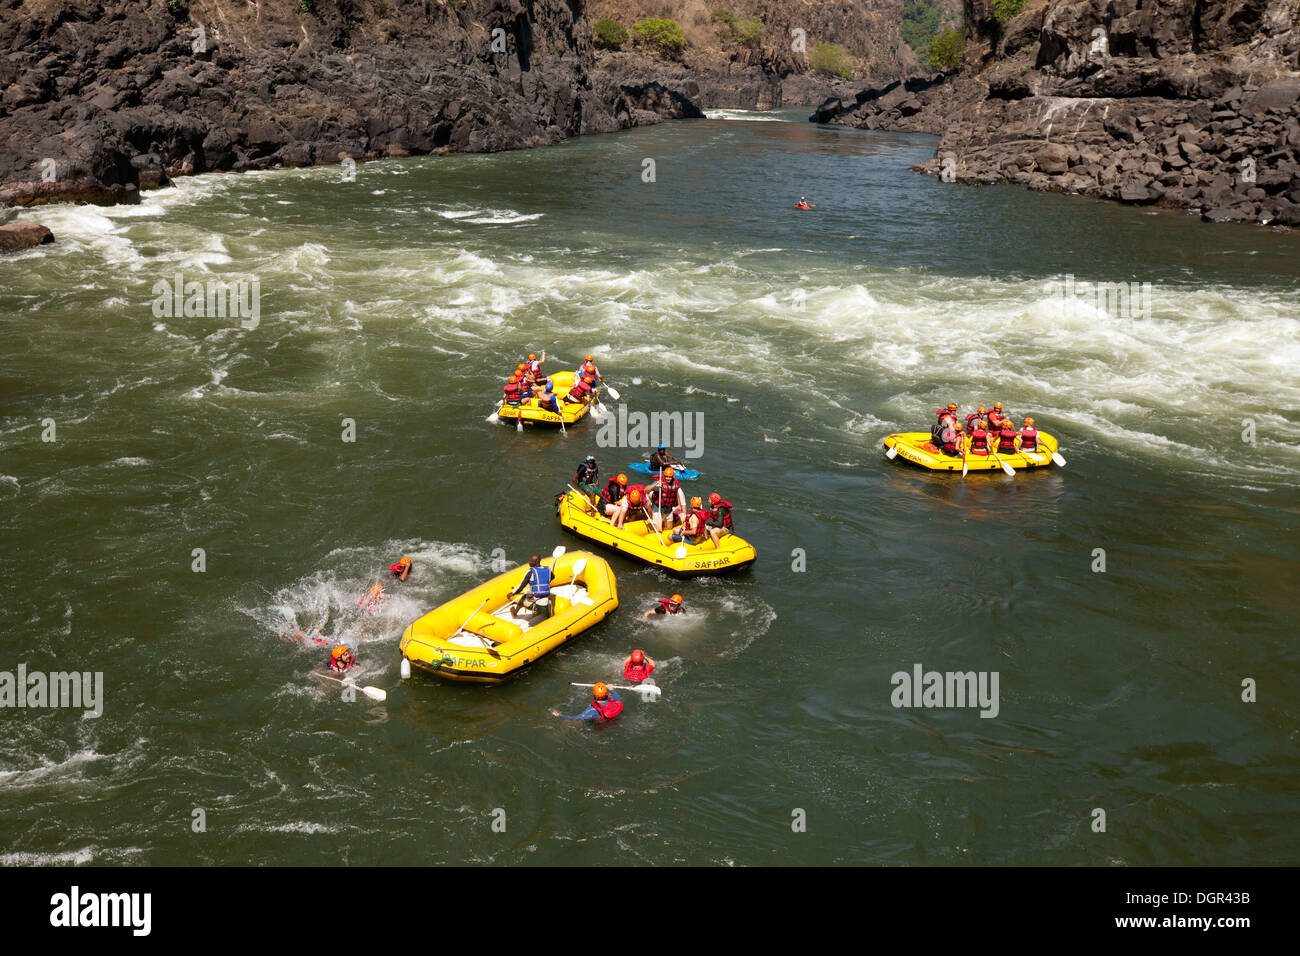 Le rafting, les gens dans l'eau à rapids, Victoria Falls, fleuve Zambèze Zambie Afrique du Sud Banque D'Images